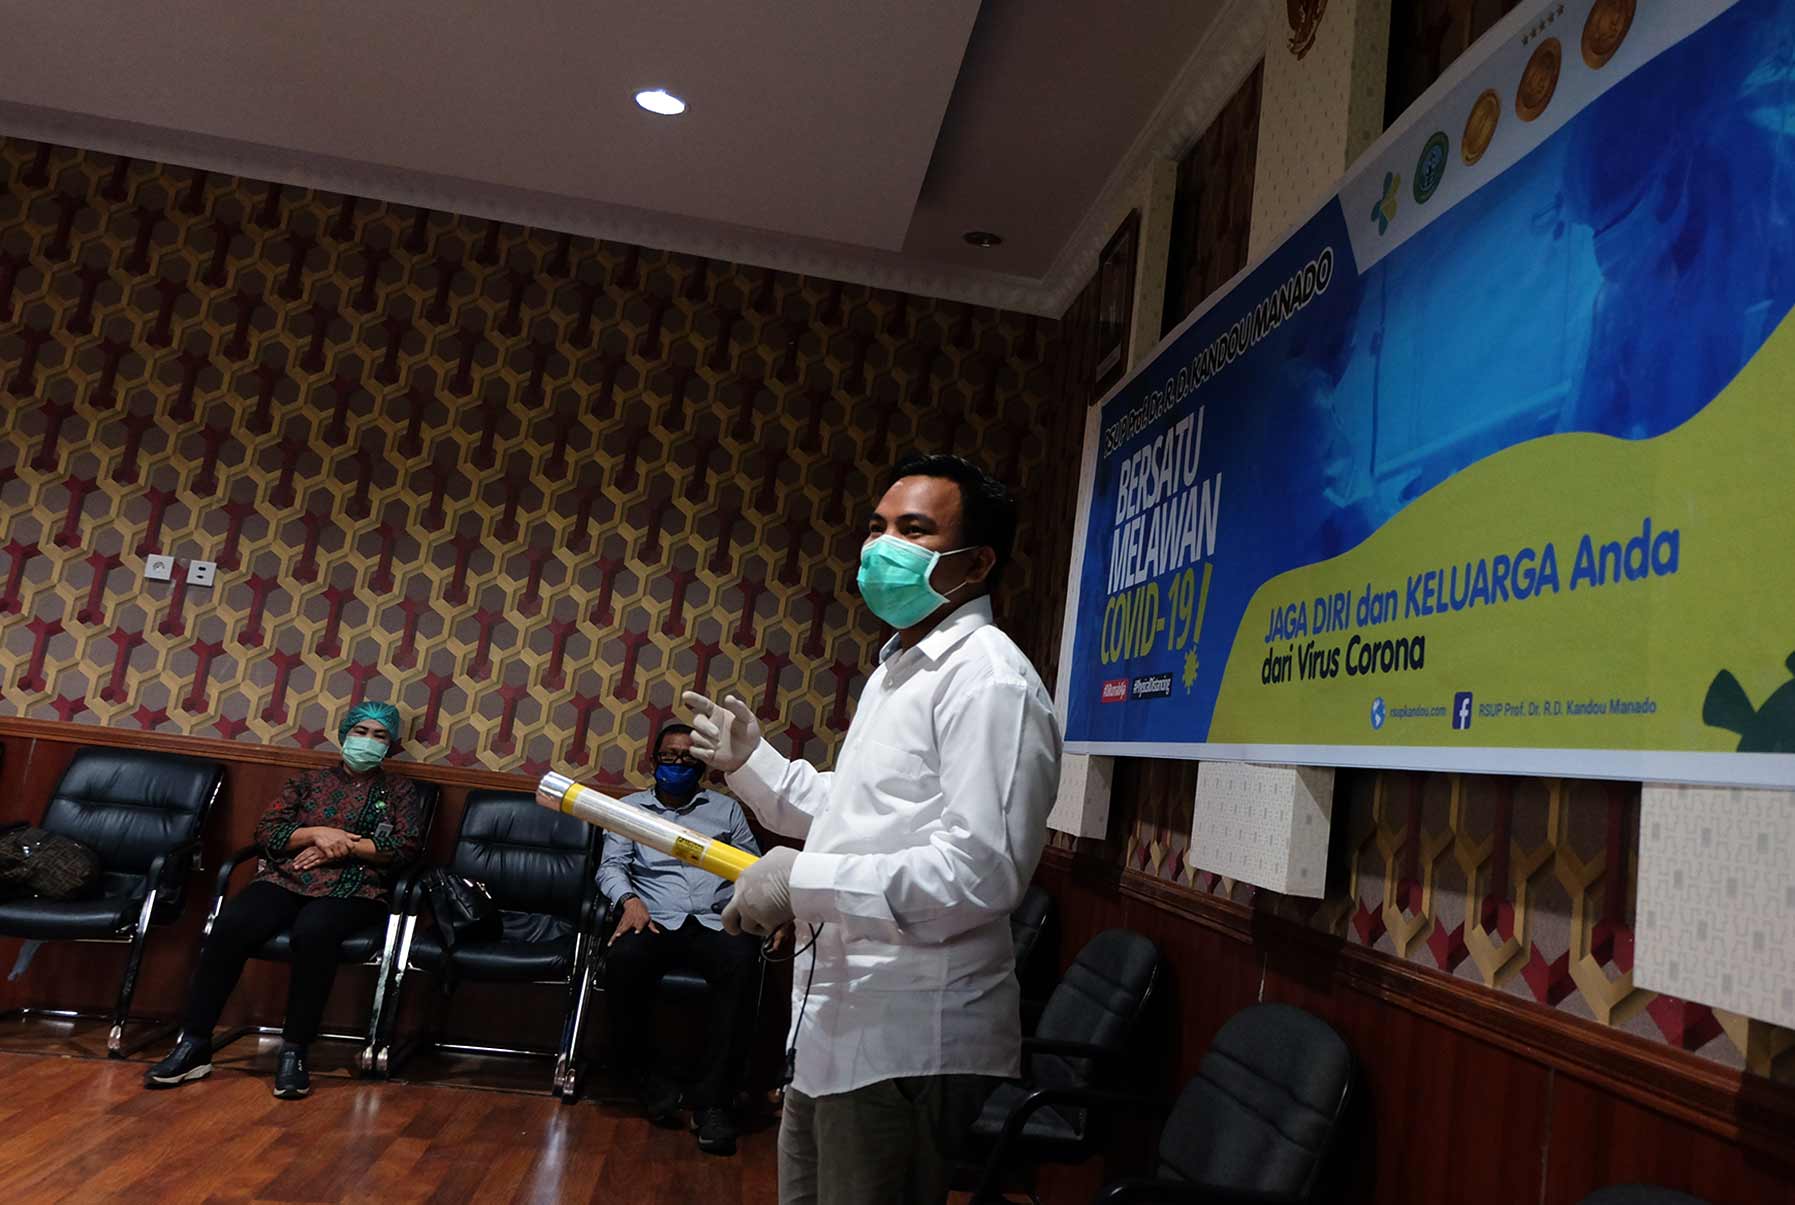 Daud Lolong mempresentasikan alat disinfektan ultraviolet mobile yang dirakitnya bersama karyawanya di hadapan para dokter di RSUp Prof Kandou Manado.